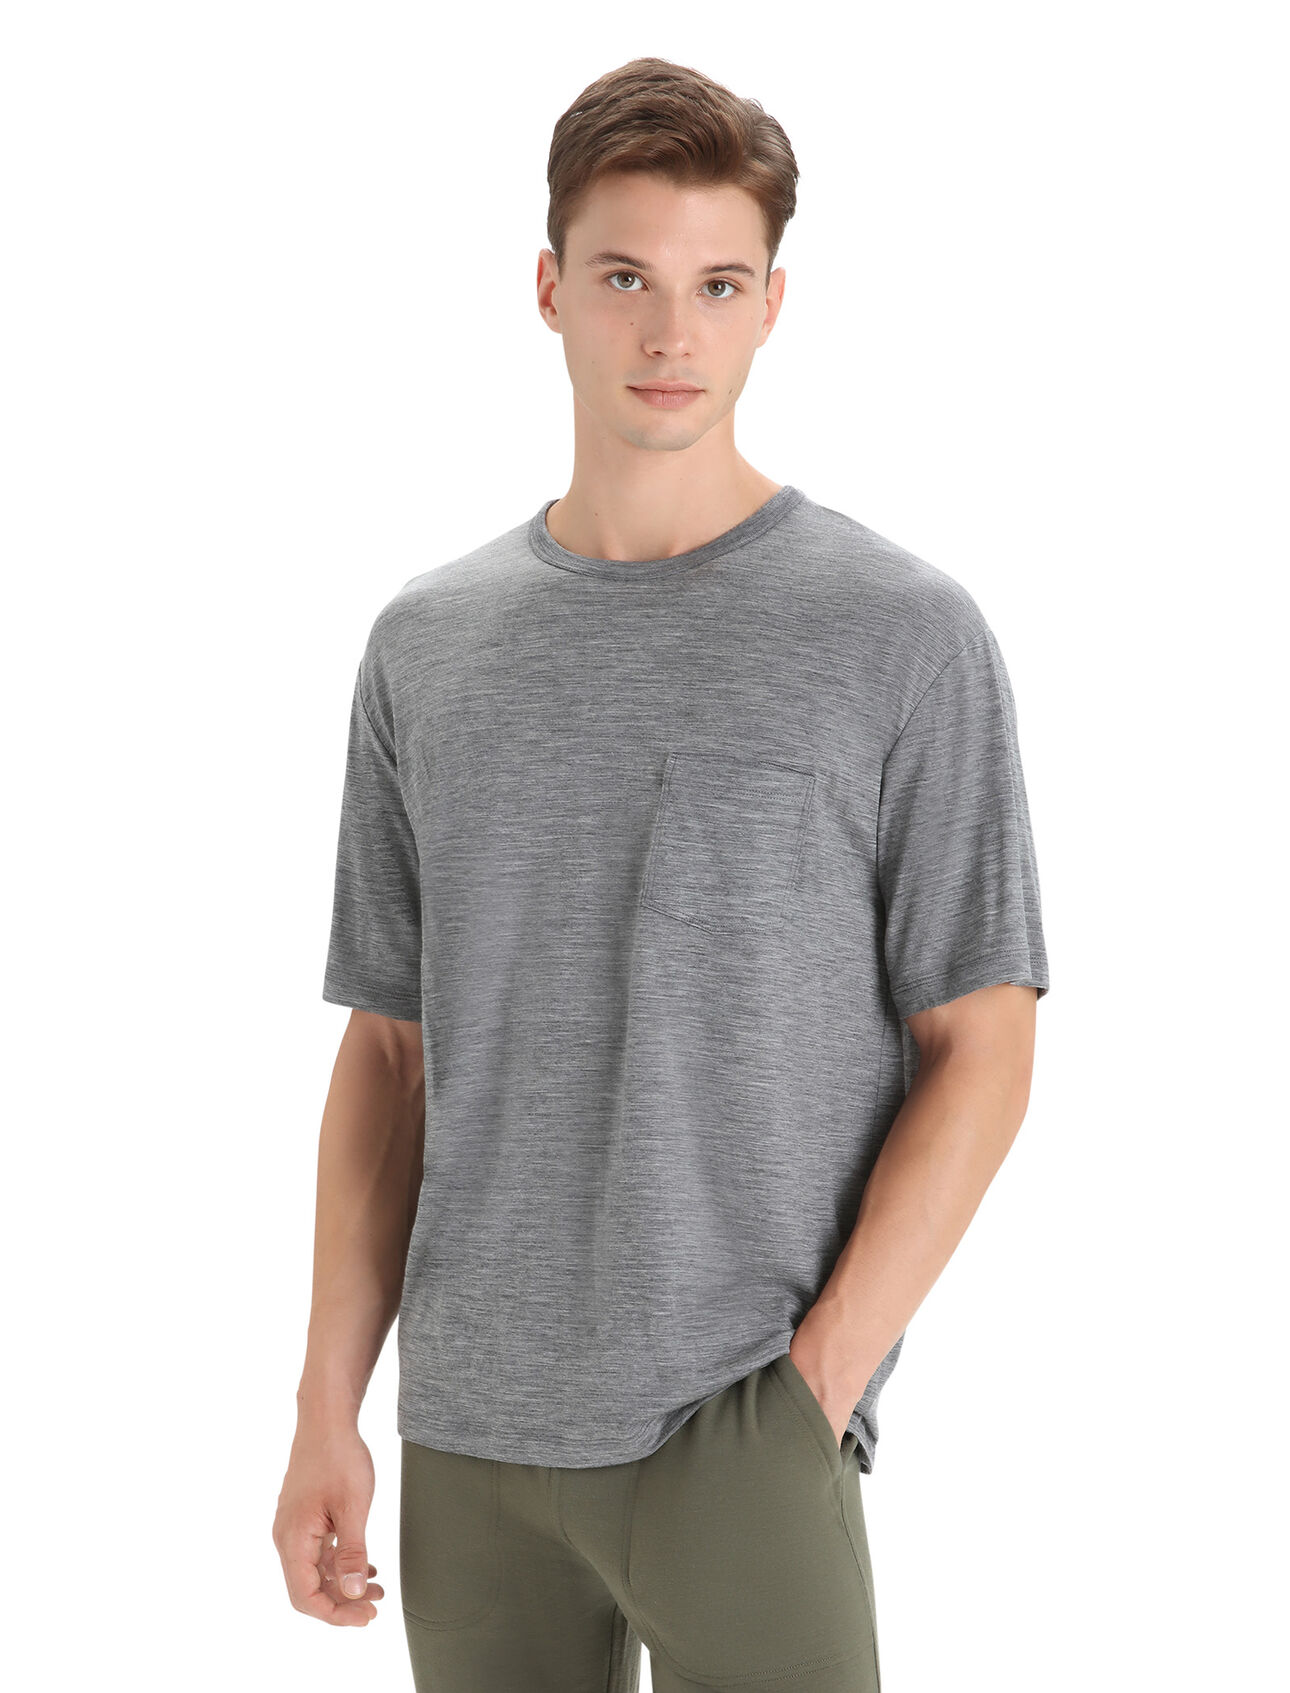 Heren Granary T-shirt met korte mouwen en borstzakje van merinowol De Granary is een klassiek T-shirt met korte mouwen en borstzakje. De top heeft een relaxte pasvorm en is gemaakt van zachte, ademende stof van 100% merinowol. Het stijlvolle T-shirt biedt een alledaags comfort. 